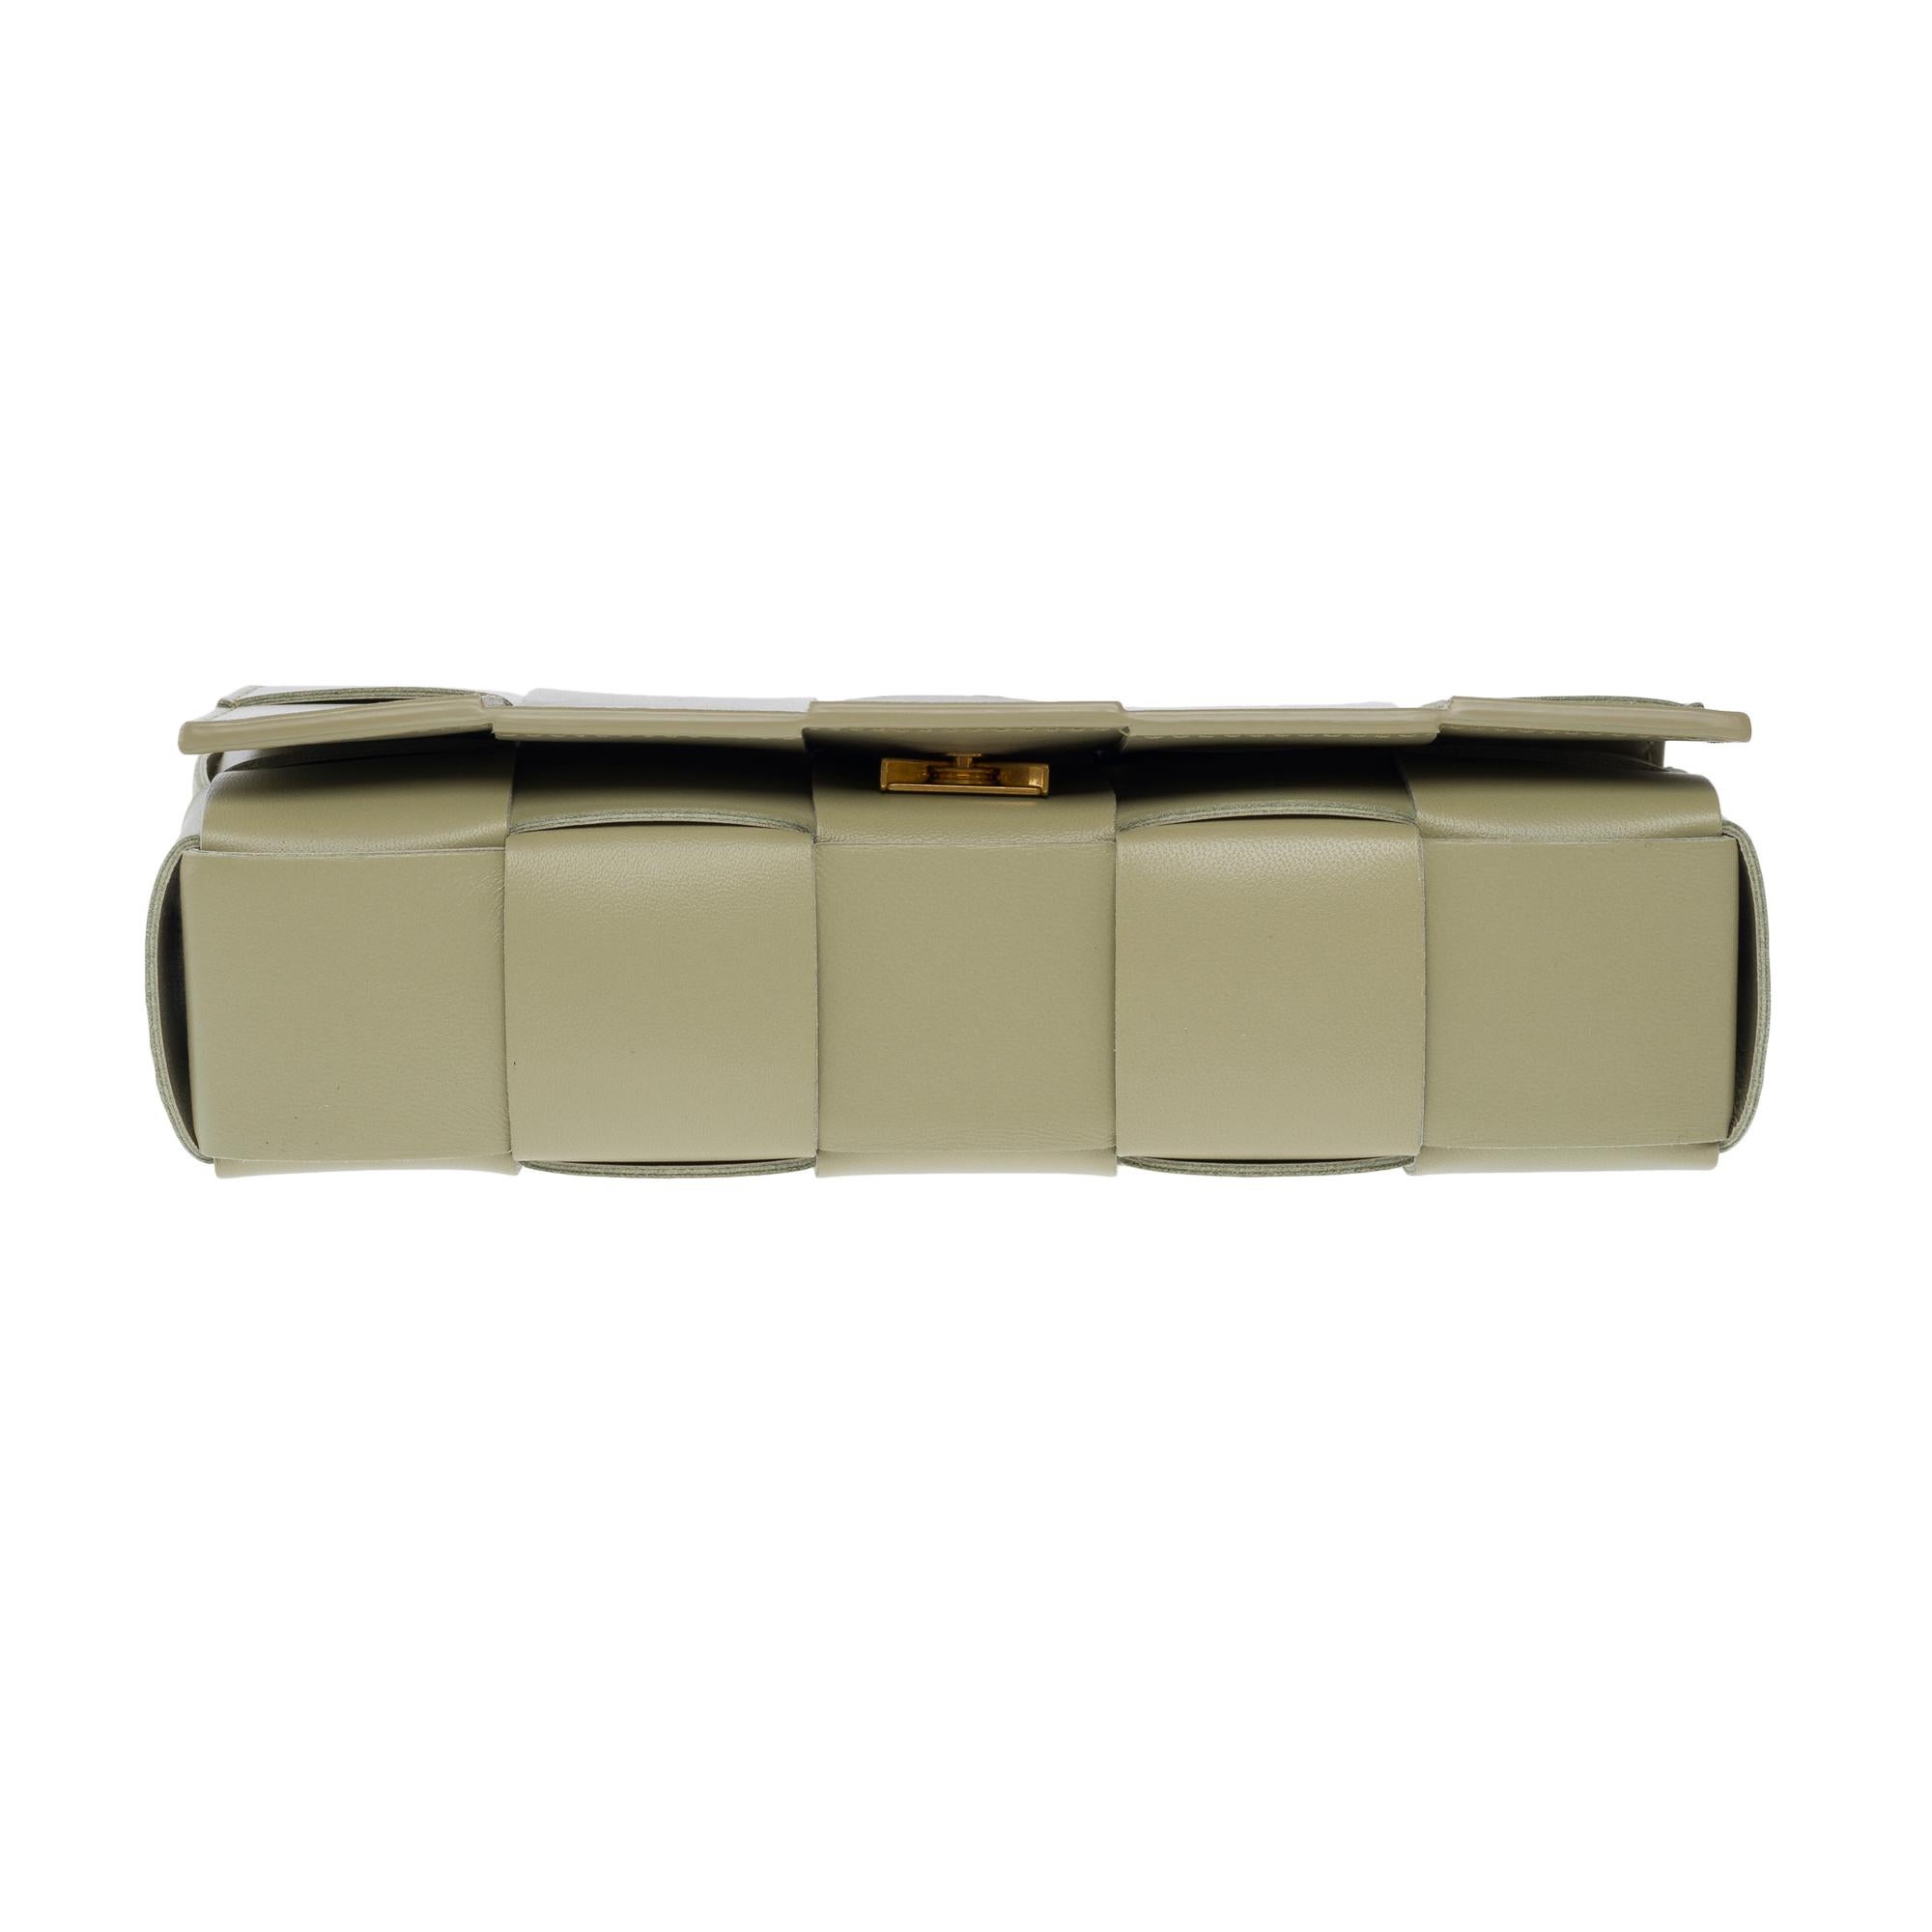 Bottega Veneta Cassette 23 shoulder bag in green lambskin leather, GHW For Sale 7